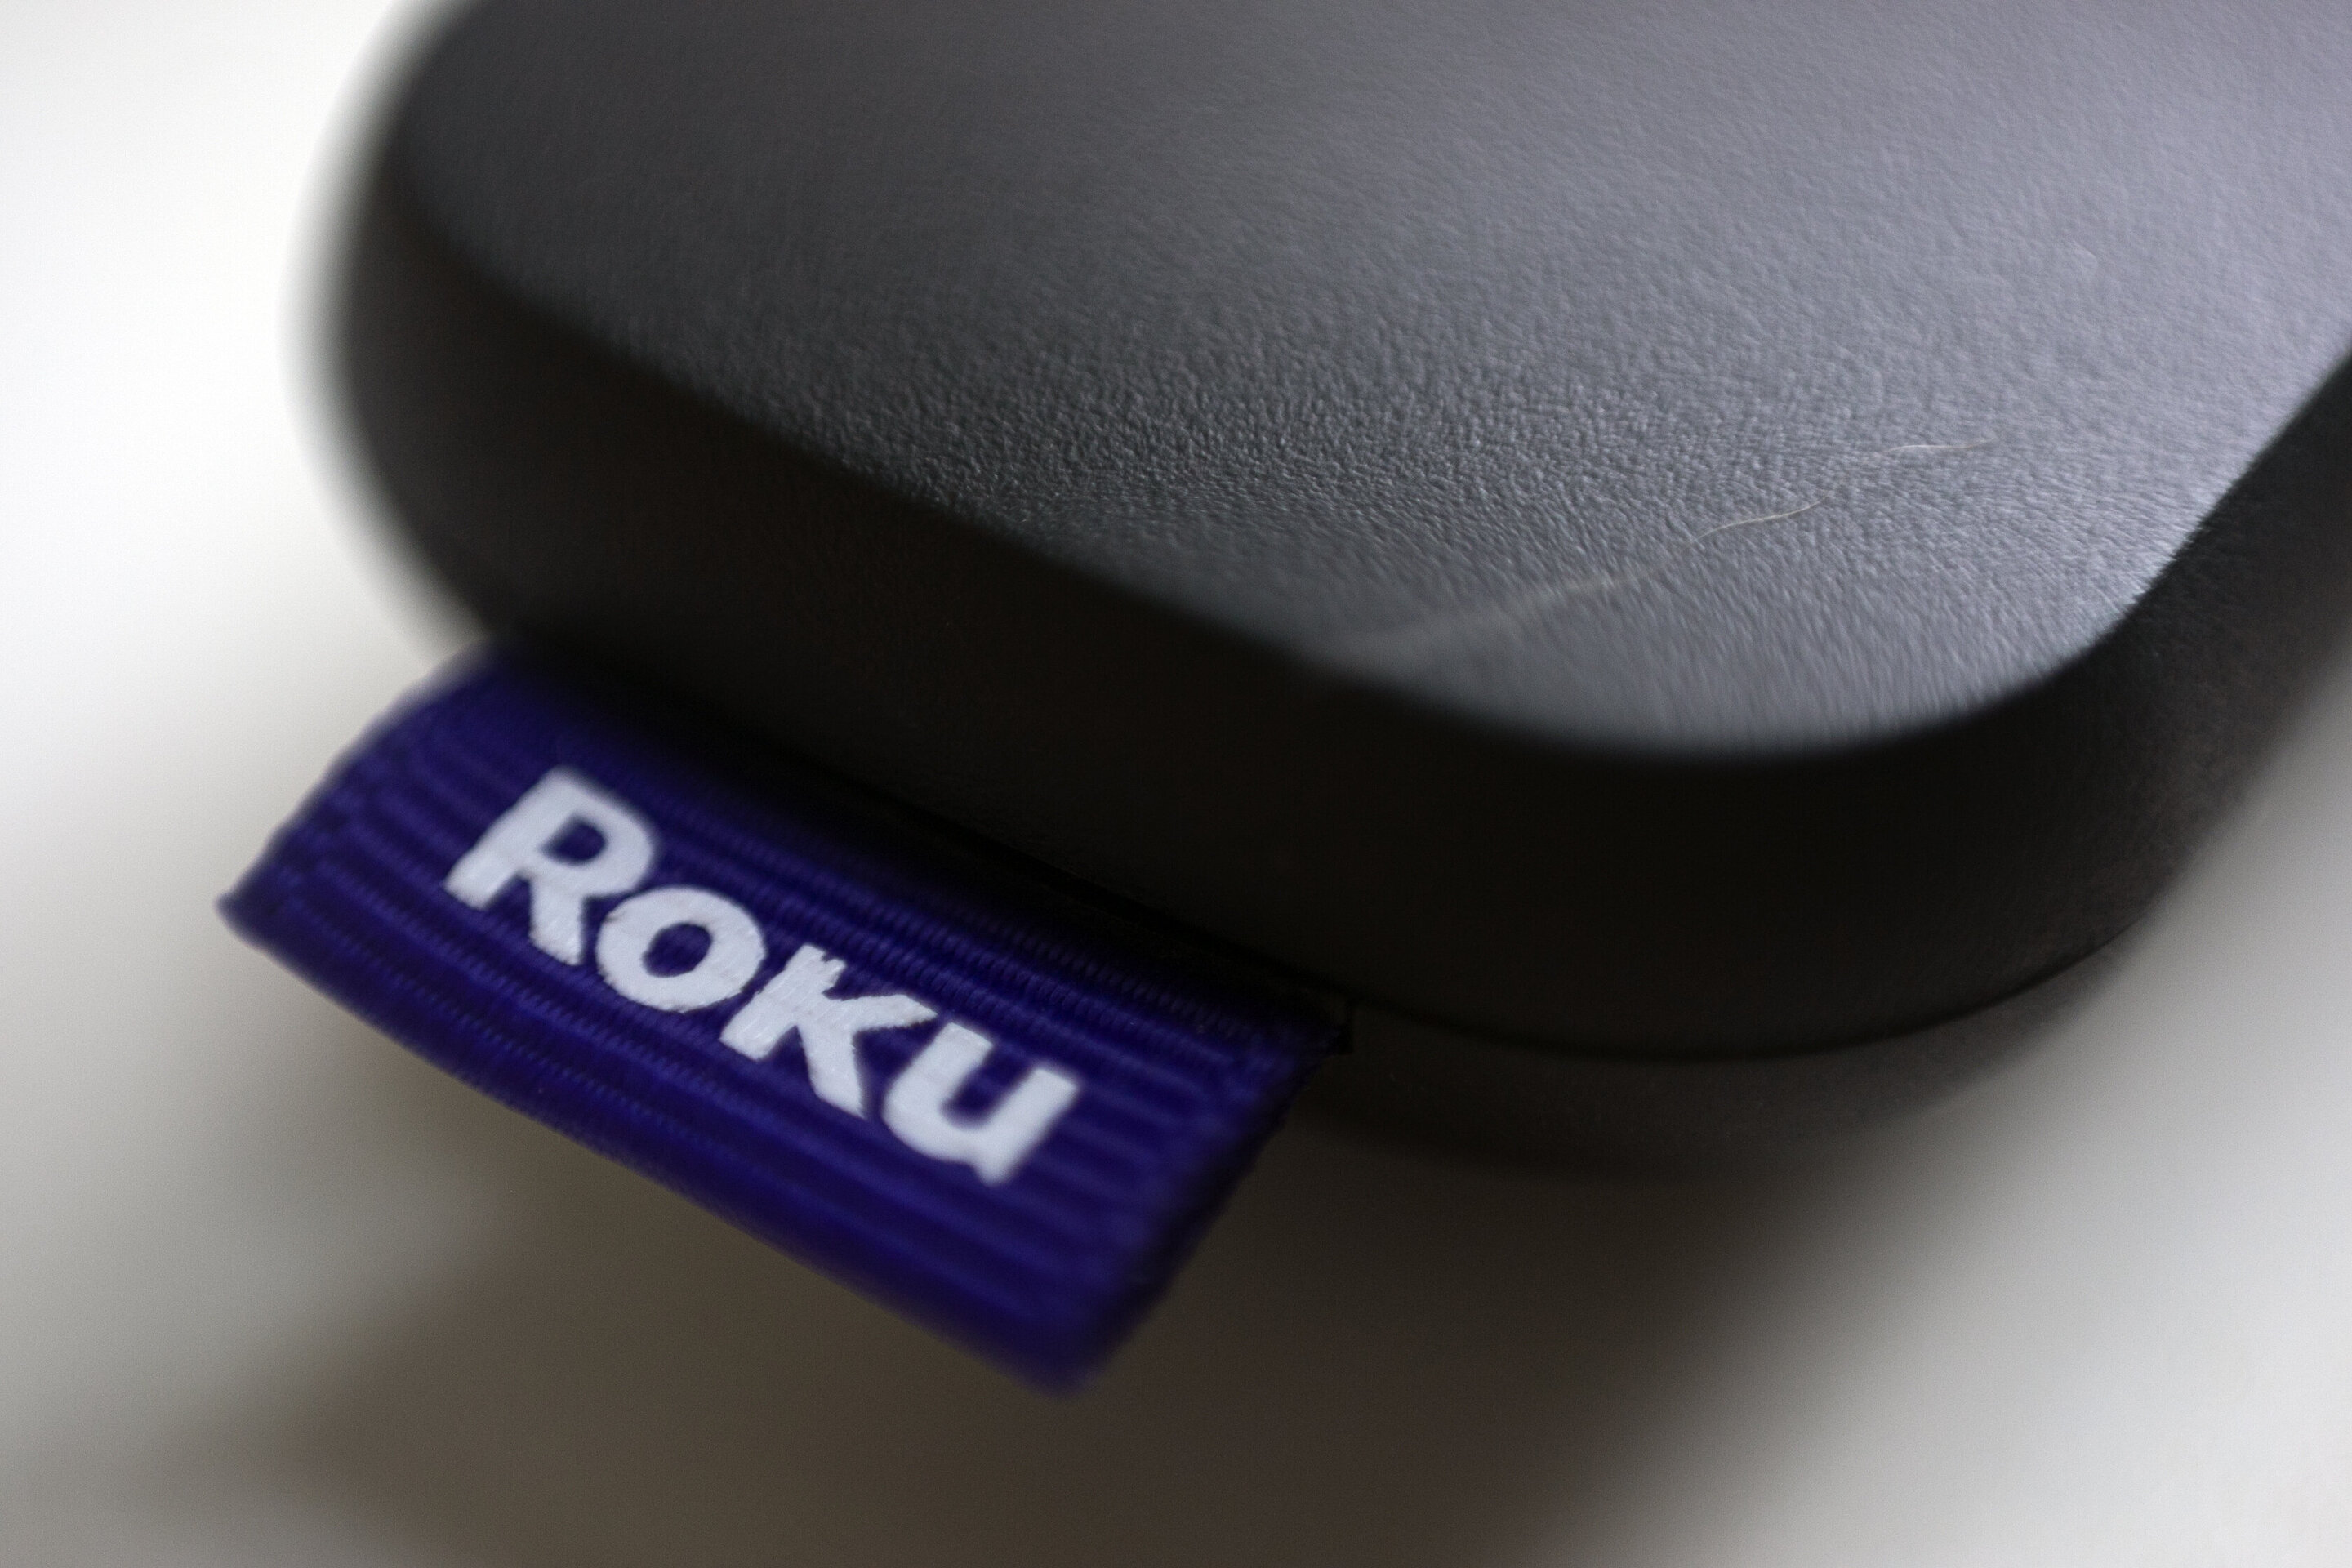 Roku OS Streaming Platform